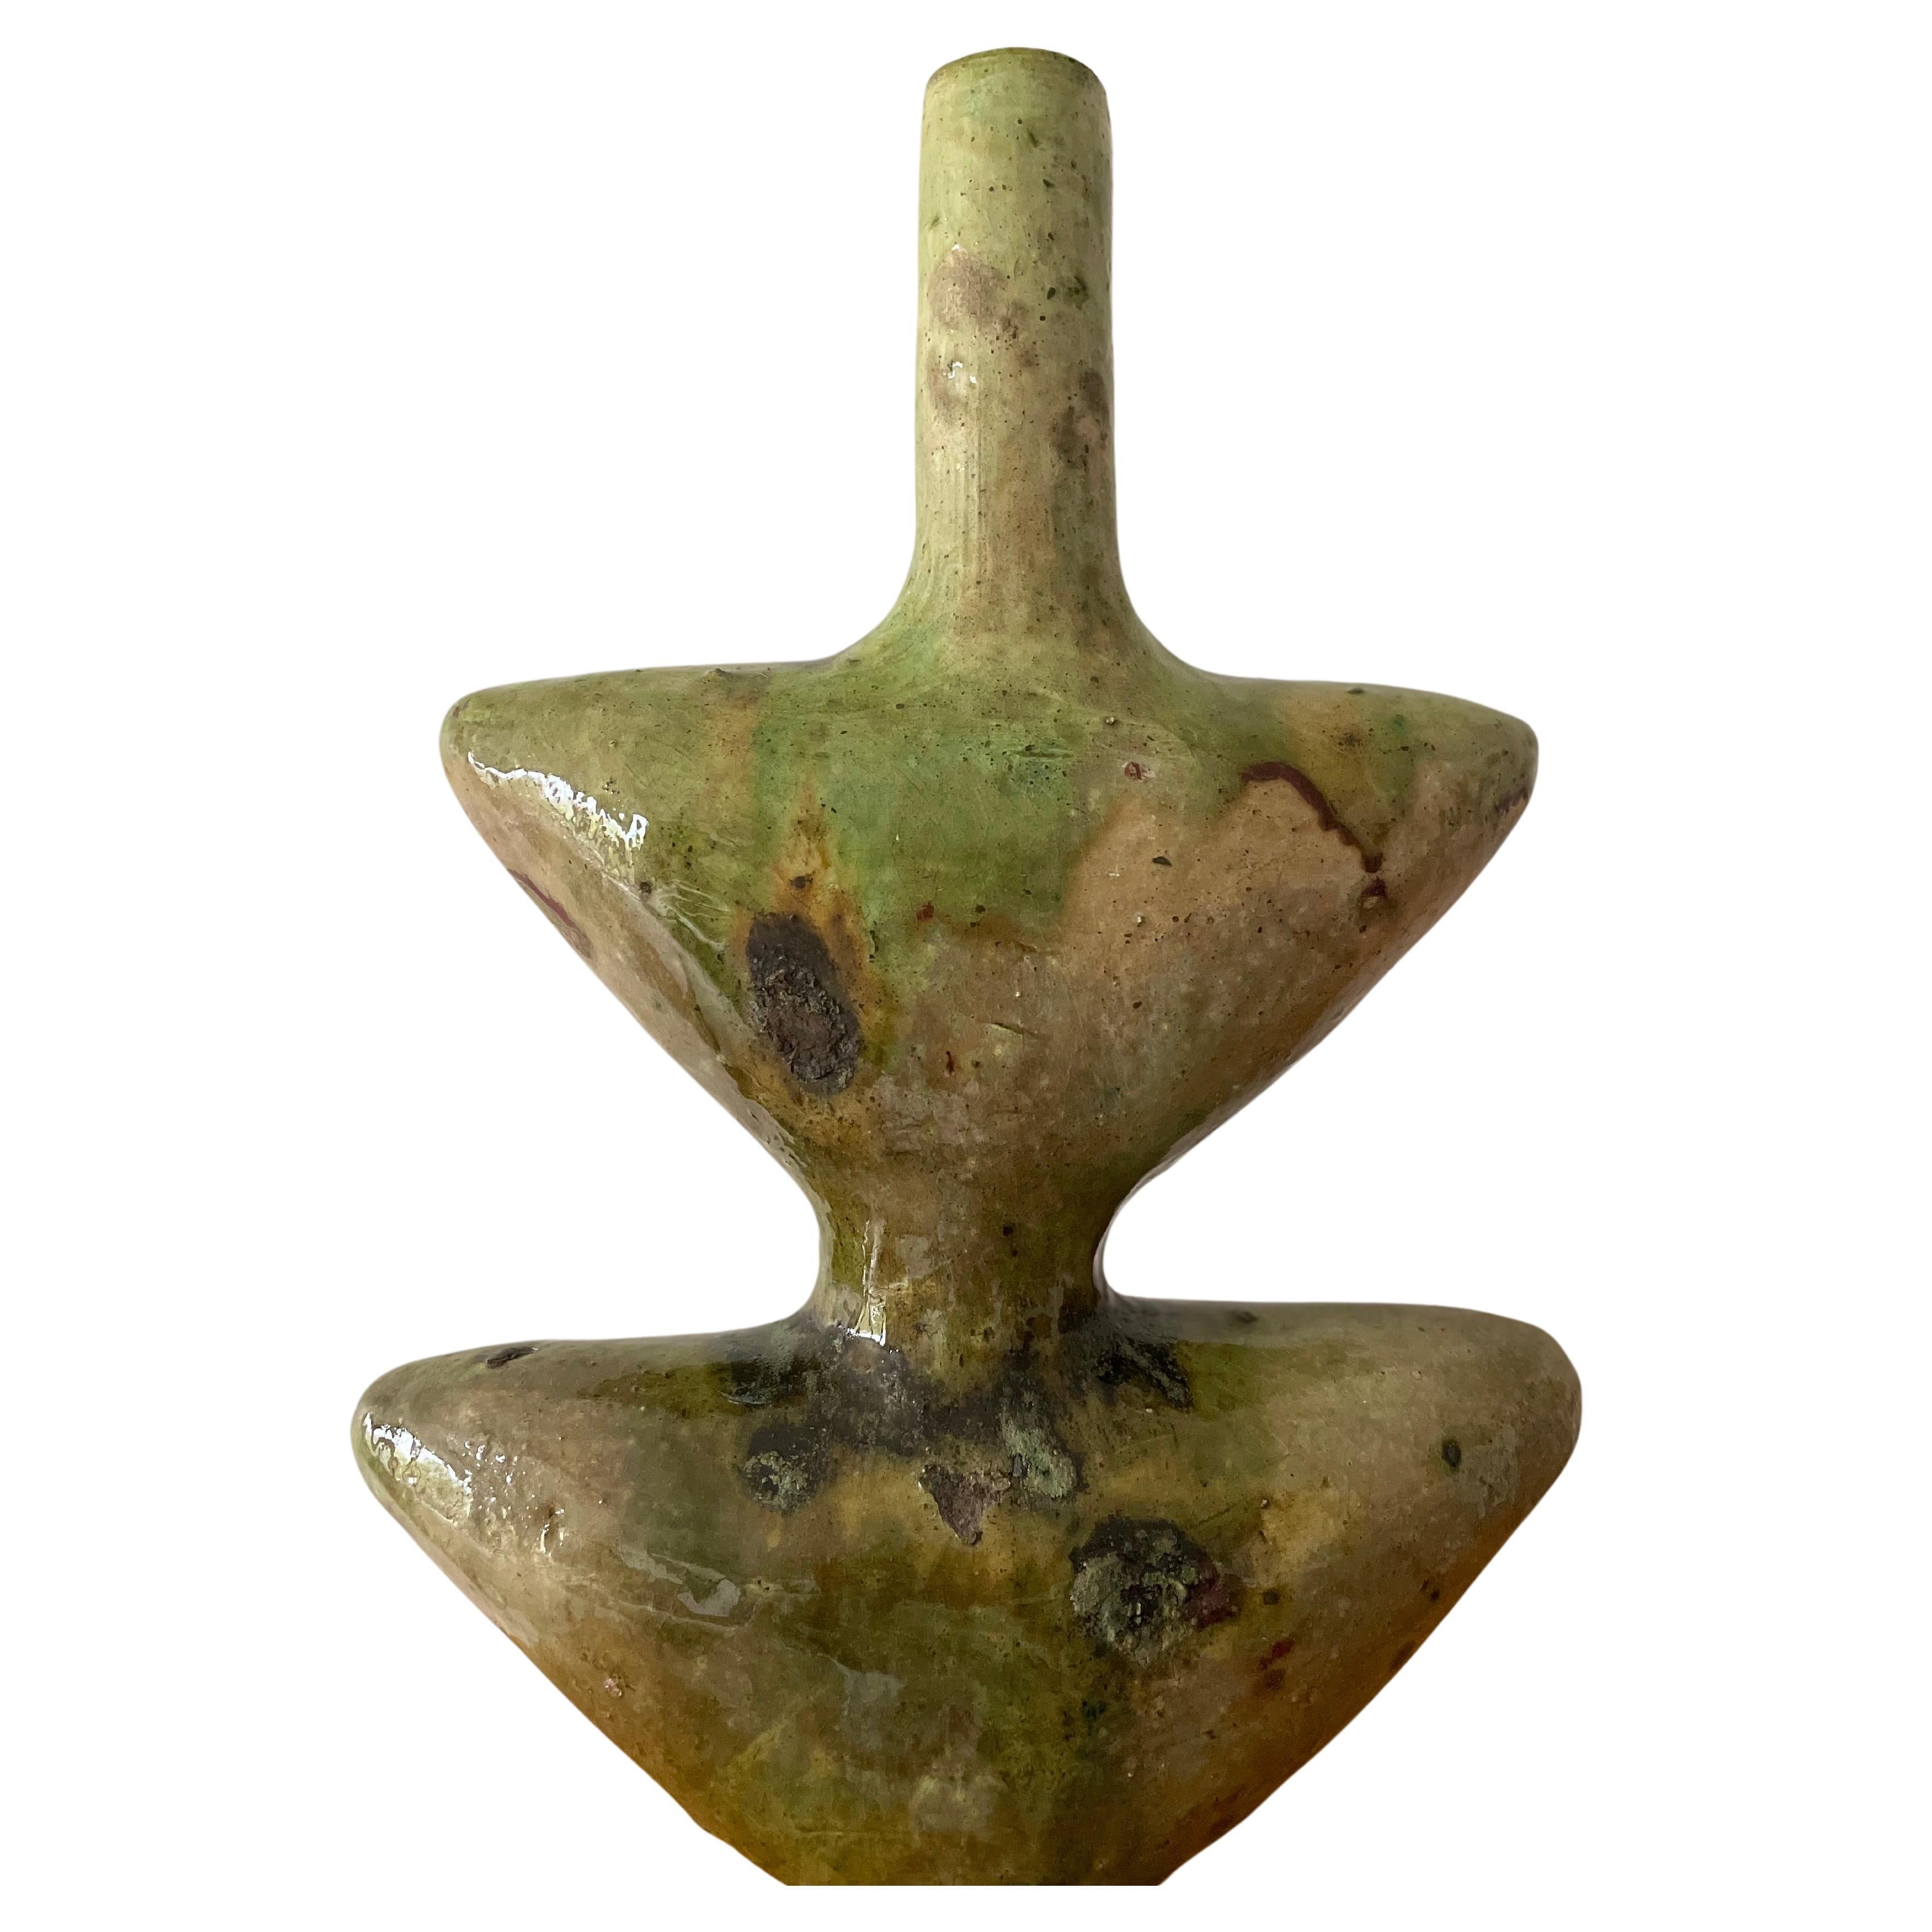 Vase Sculpture Marocaine en Céramique Tamegroute
Ce vase vintage émaillé vert, fabriqué à la main, est une simple sculpture du village de Tamegroute, dans le sud du Maroc, où d'habiles potiers ont pratiqué des techniques locales qui ont été